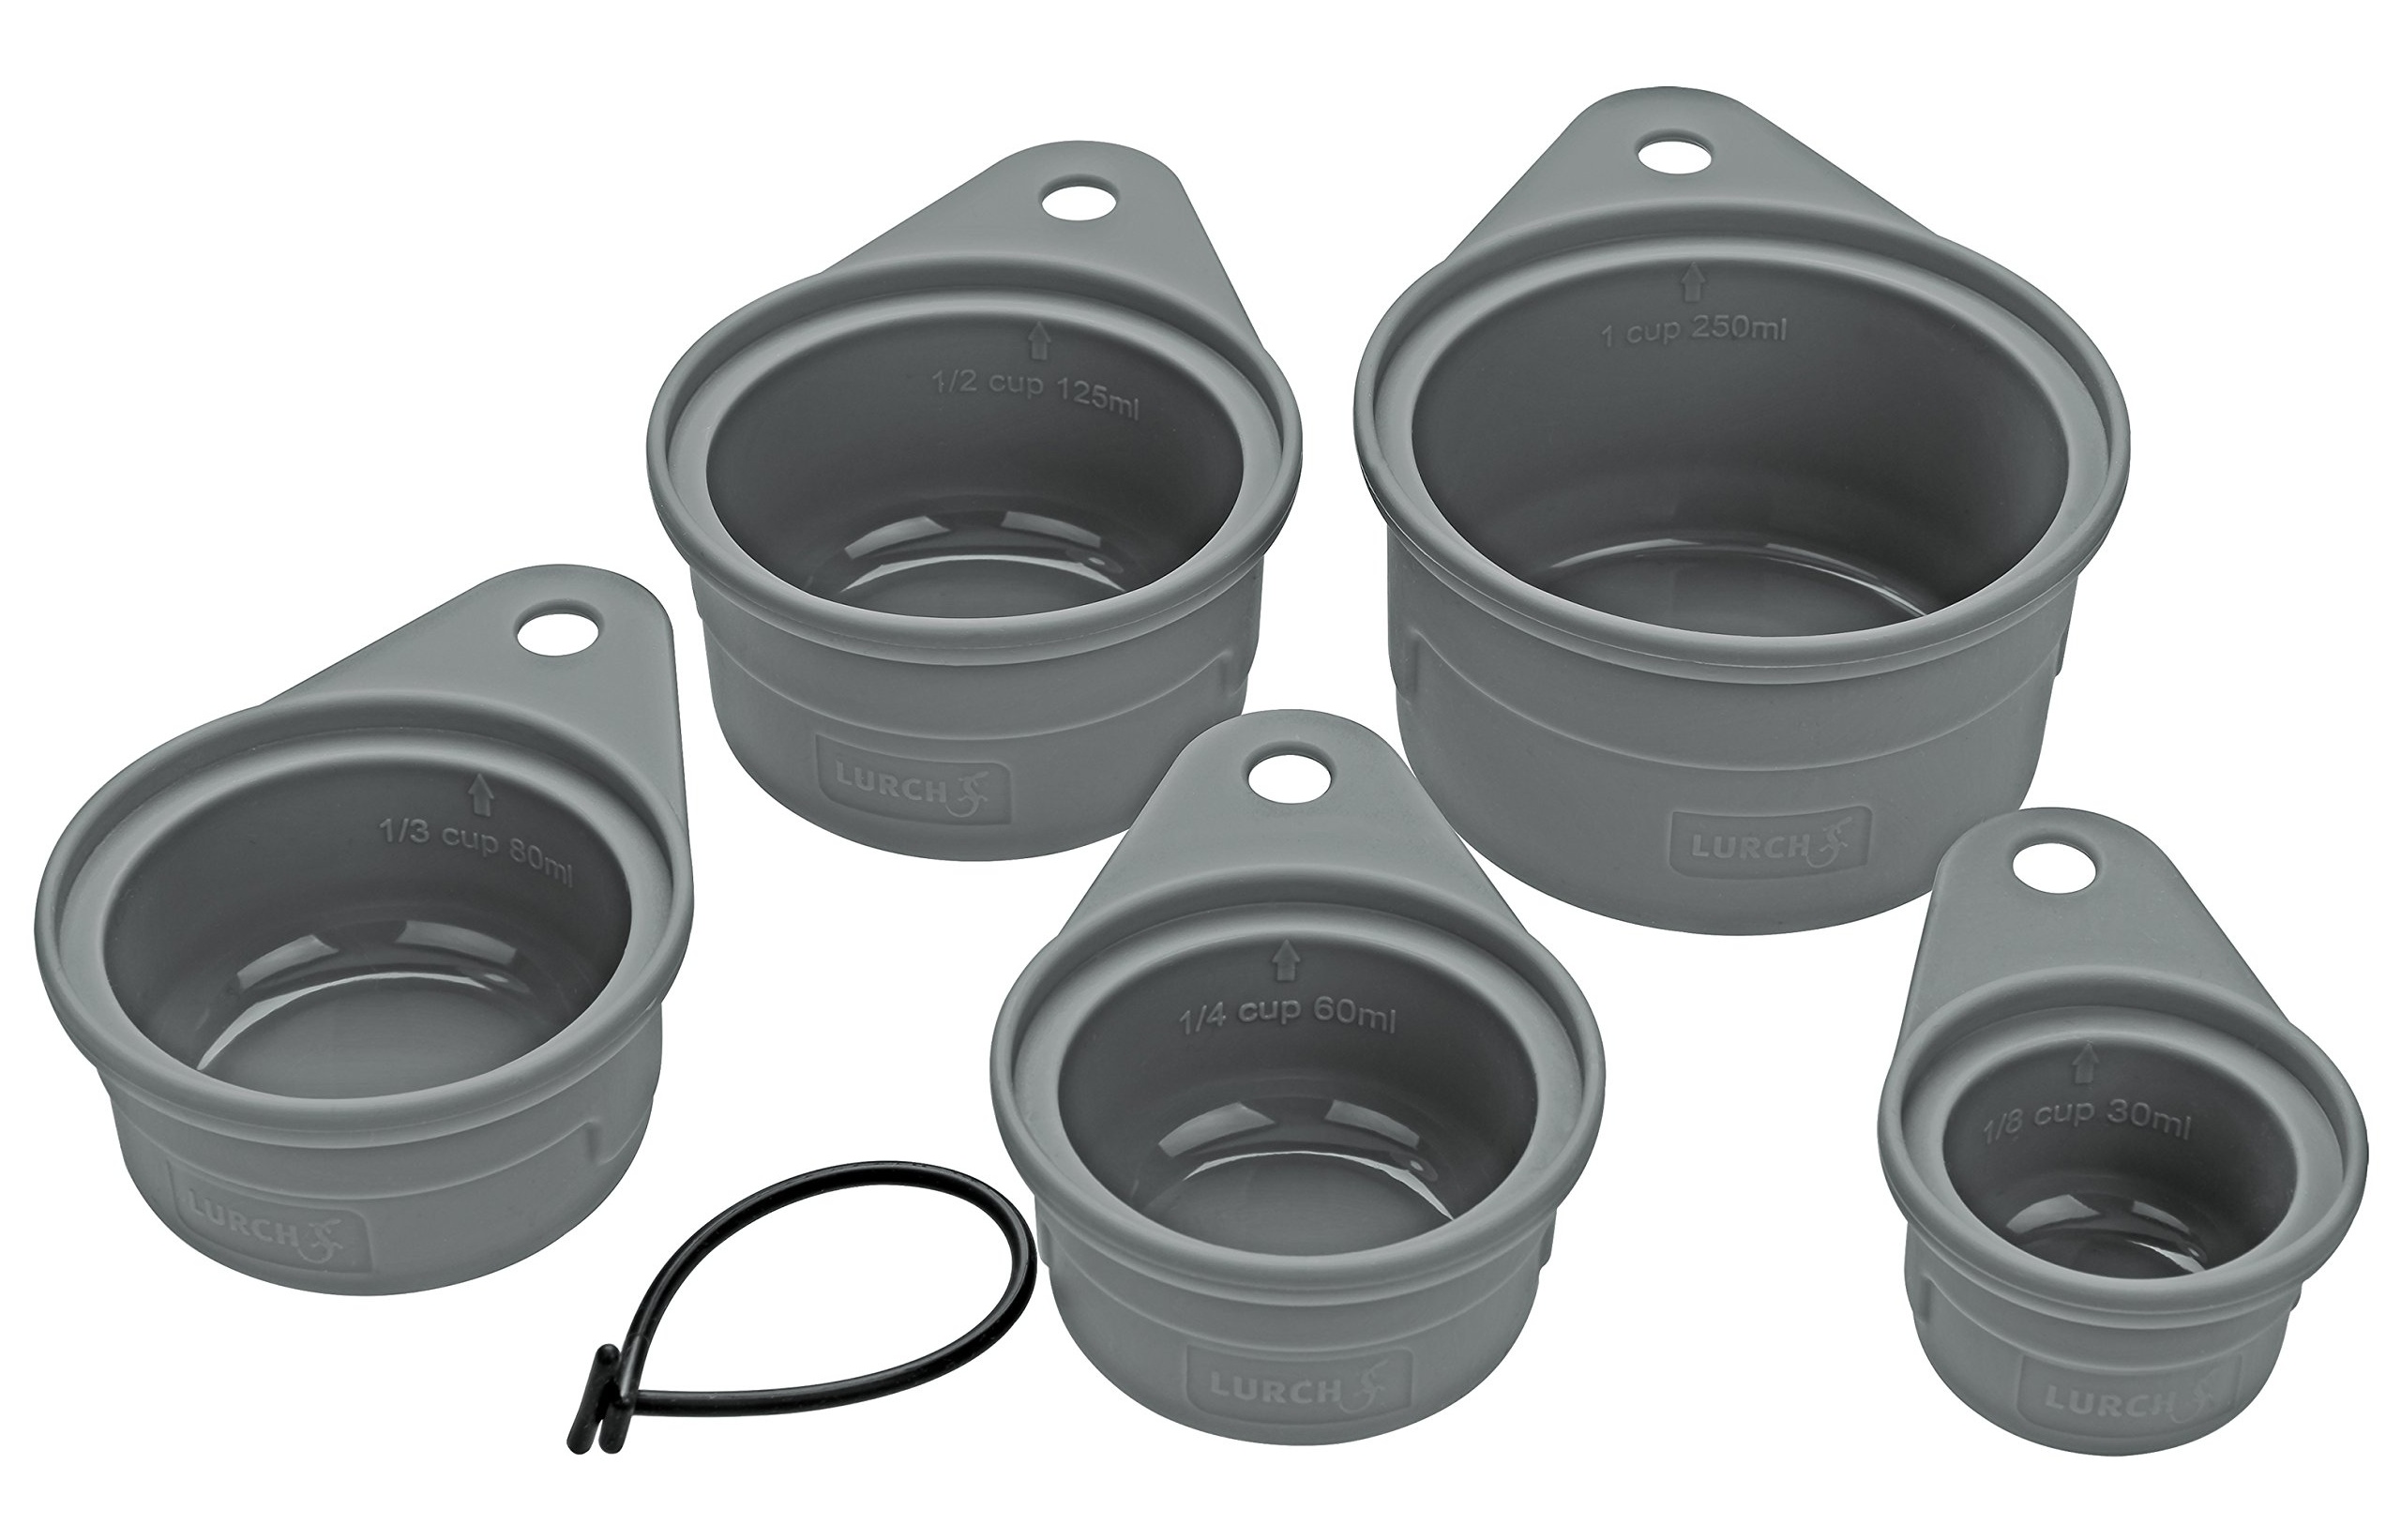 Bild 70261 Messbecher-Set (5tlg.) zum Abmessen von Zutaten in Cup-Maߟeinheiten aus 100% BPA-freiem Platin Silikon, Grau, 13 x 10 x 6 cm